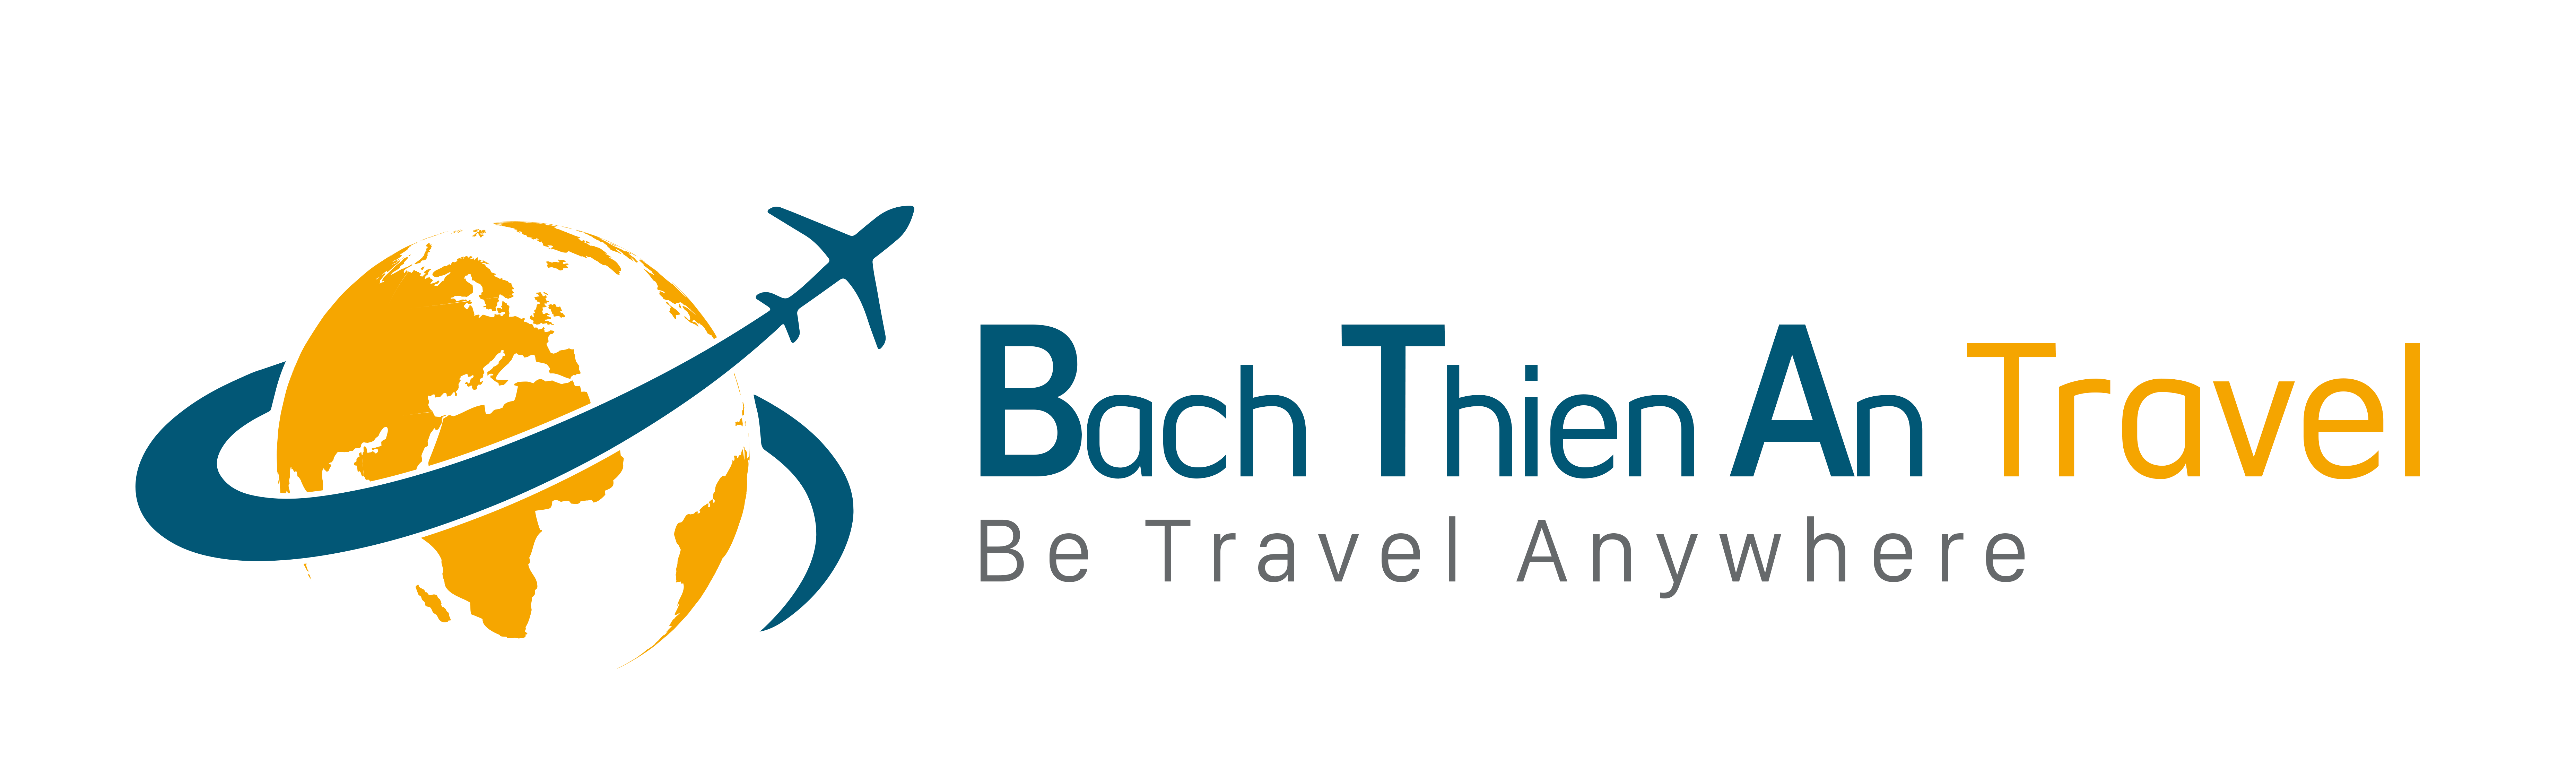 Bach Thien An Travel